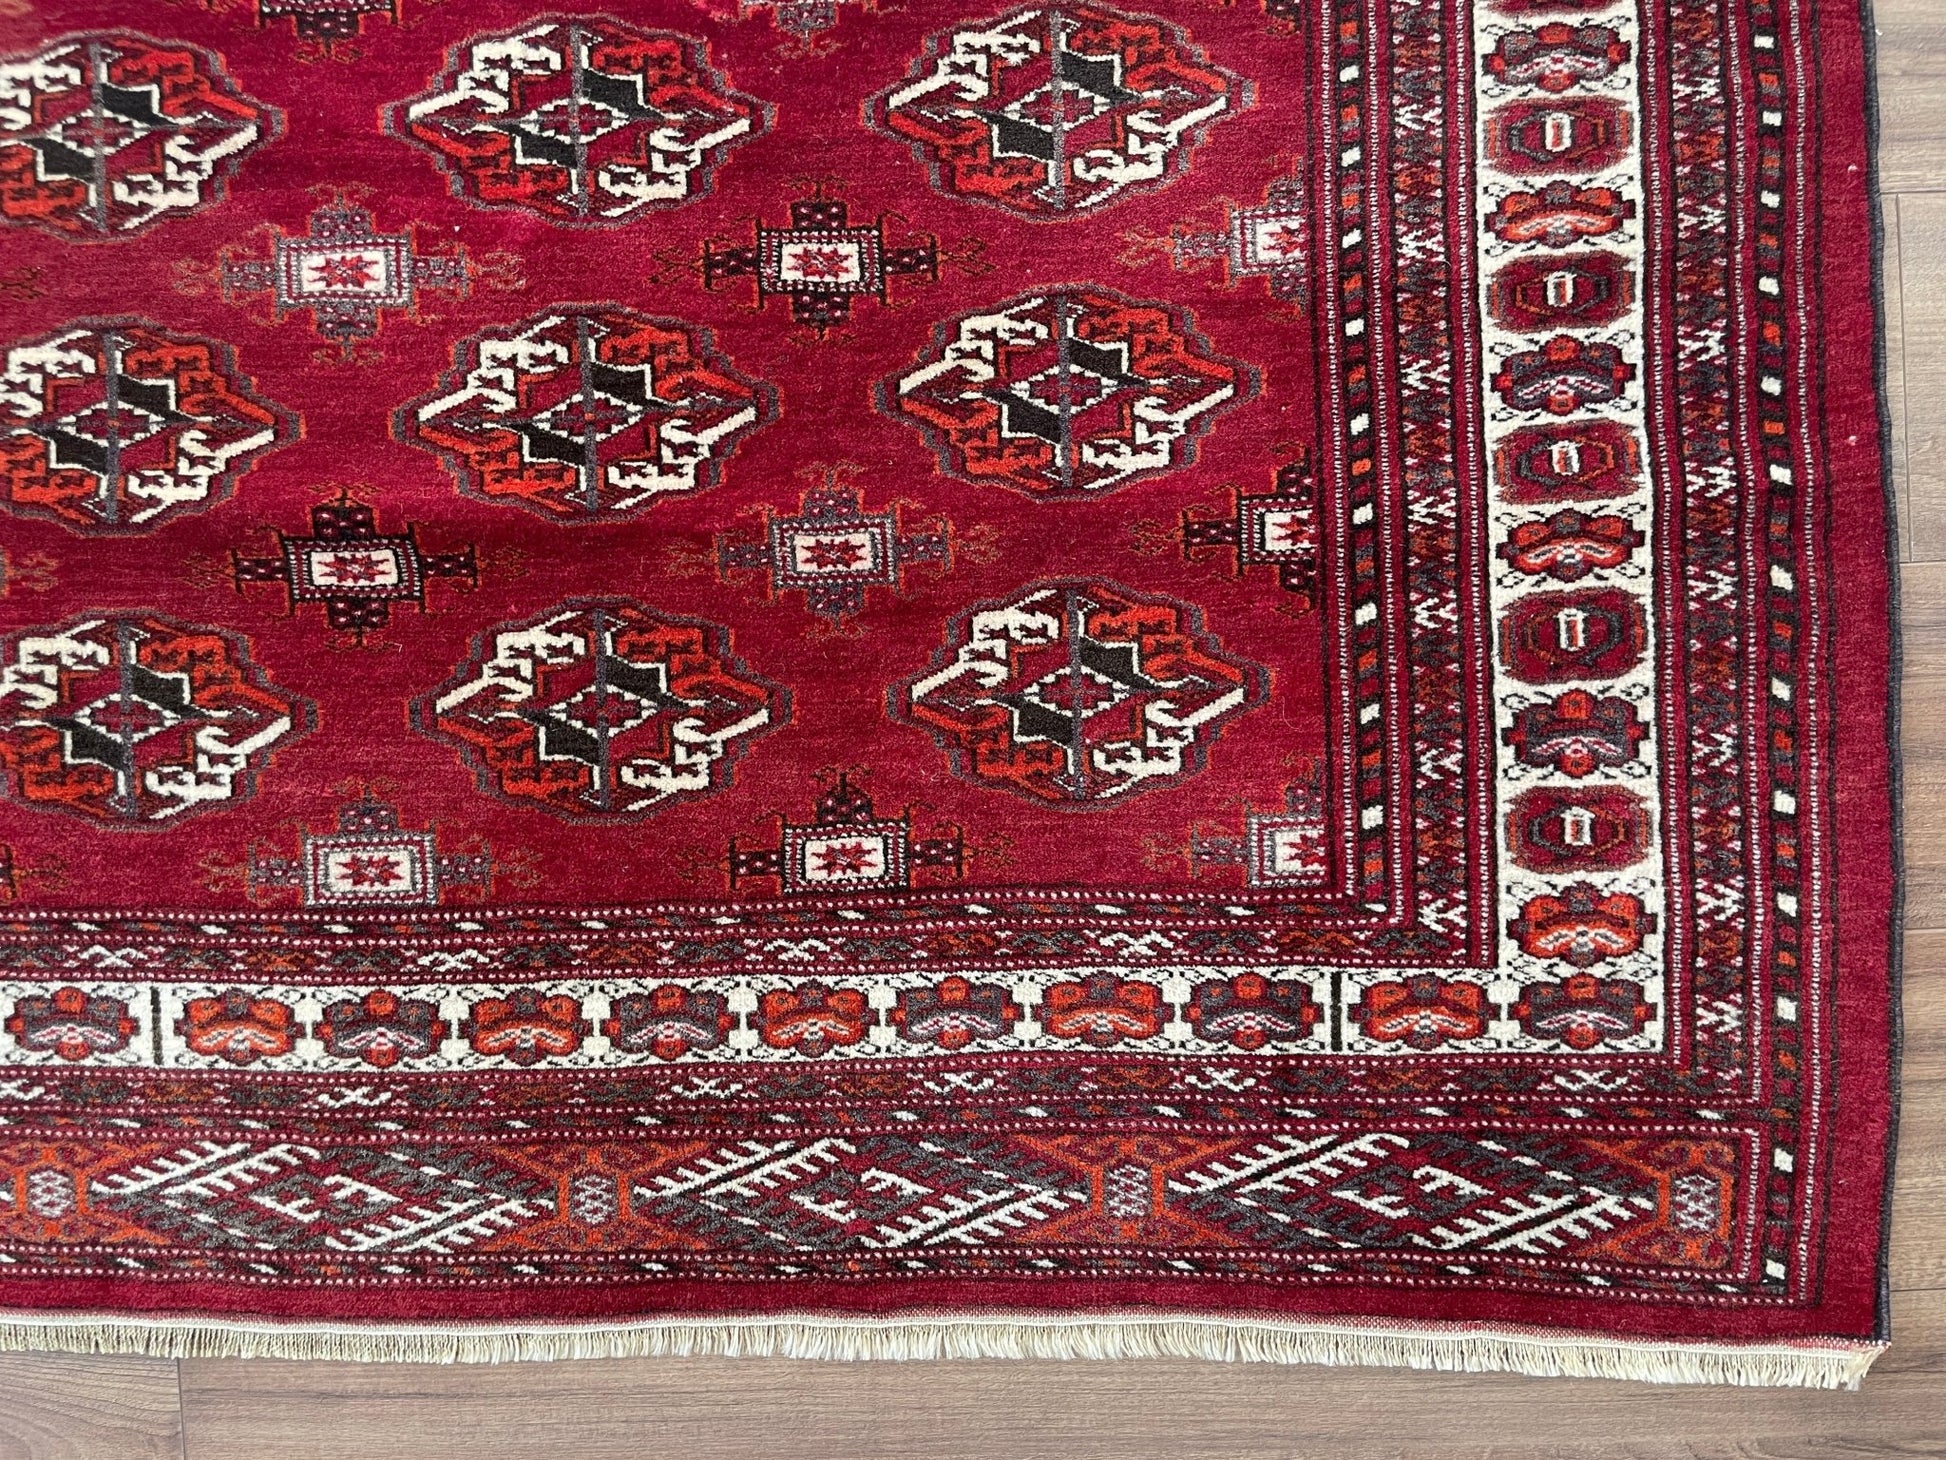 bukhara turkmen rug. Small vintage rug scatter rug Oriental rug shop San Francisco Bay area. Buy vintage rug shop online